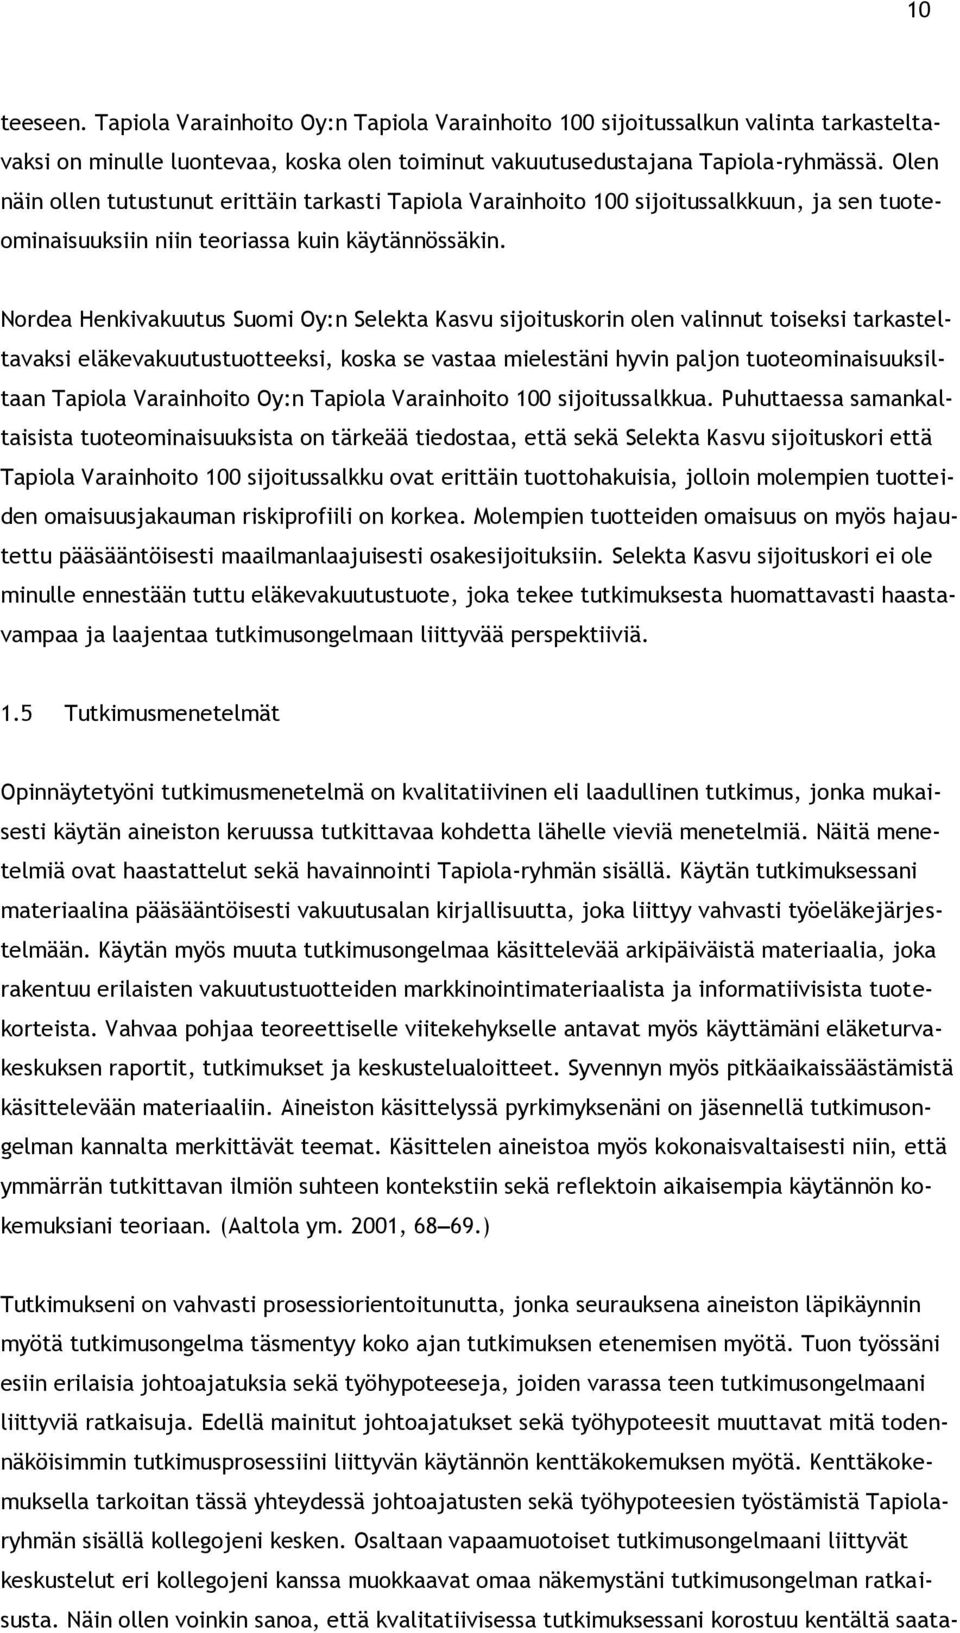 Nordea Henkivakuutus Suomi Oy:n Selekta Kasvu sijoituskorin olen valinnut toiseksi tarkasteltavaksi eläkevakuutustuotteeksi, koska se vastaa mielestäni hyvin paljon tuoteominaisuuksiltaan Tapiola